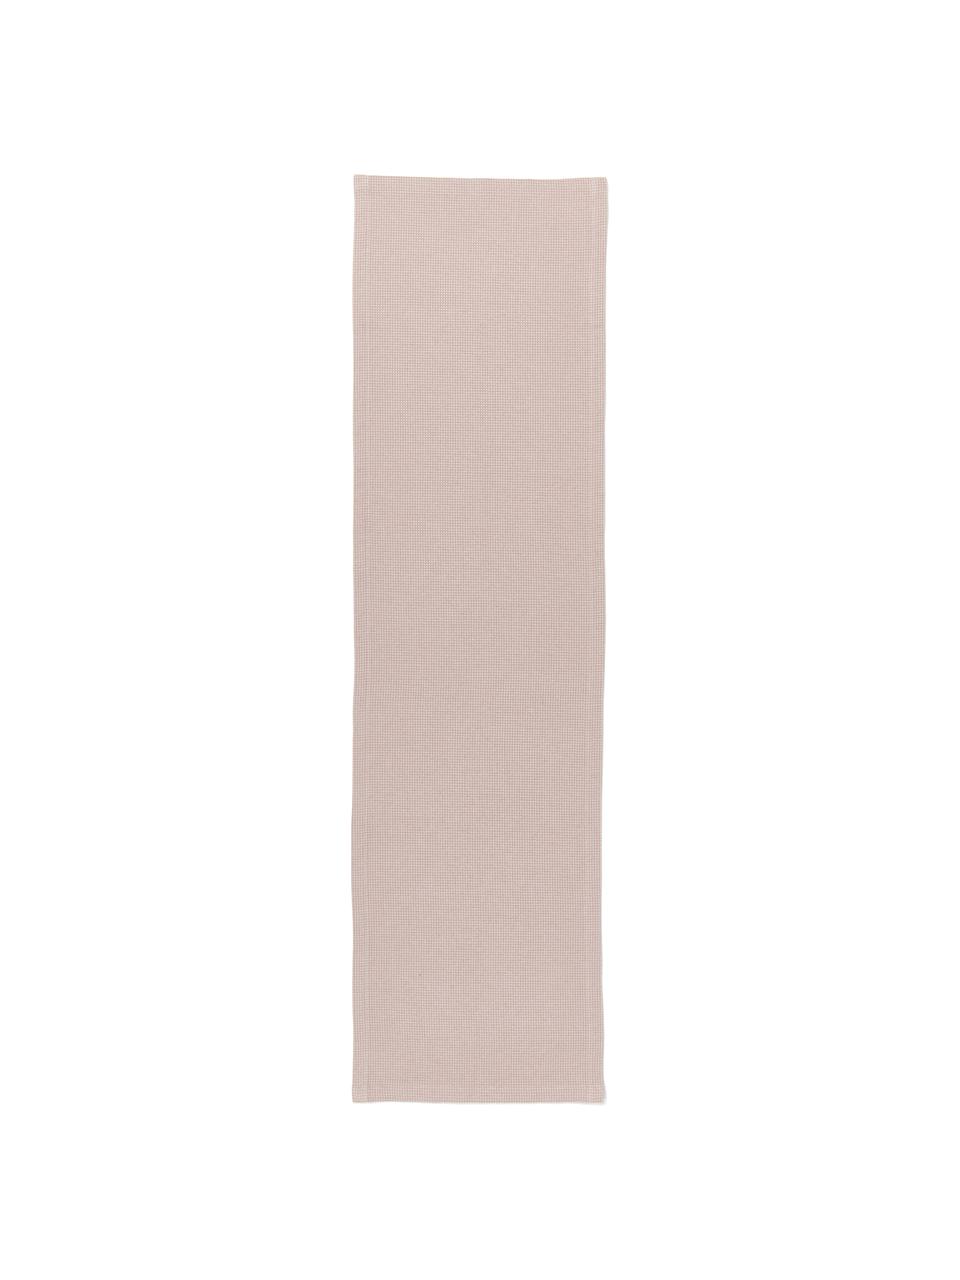 Bieżnik z piki Kubo, 65% bawełna, 35% poliester, Brudny różowy, S 40 x D 145 cm